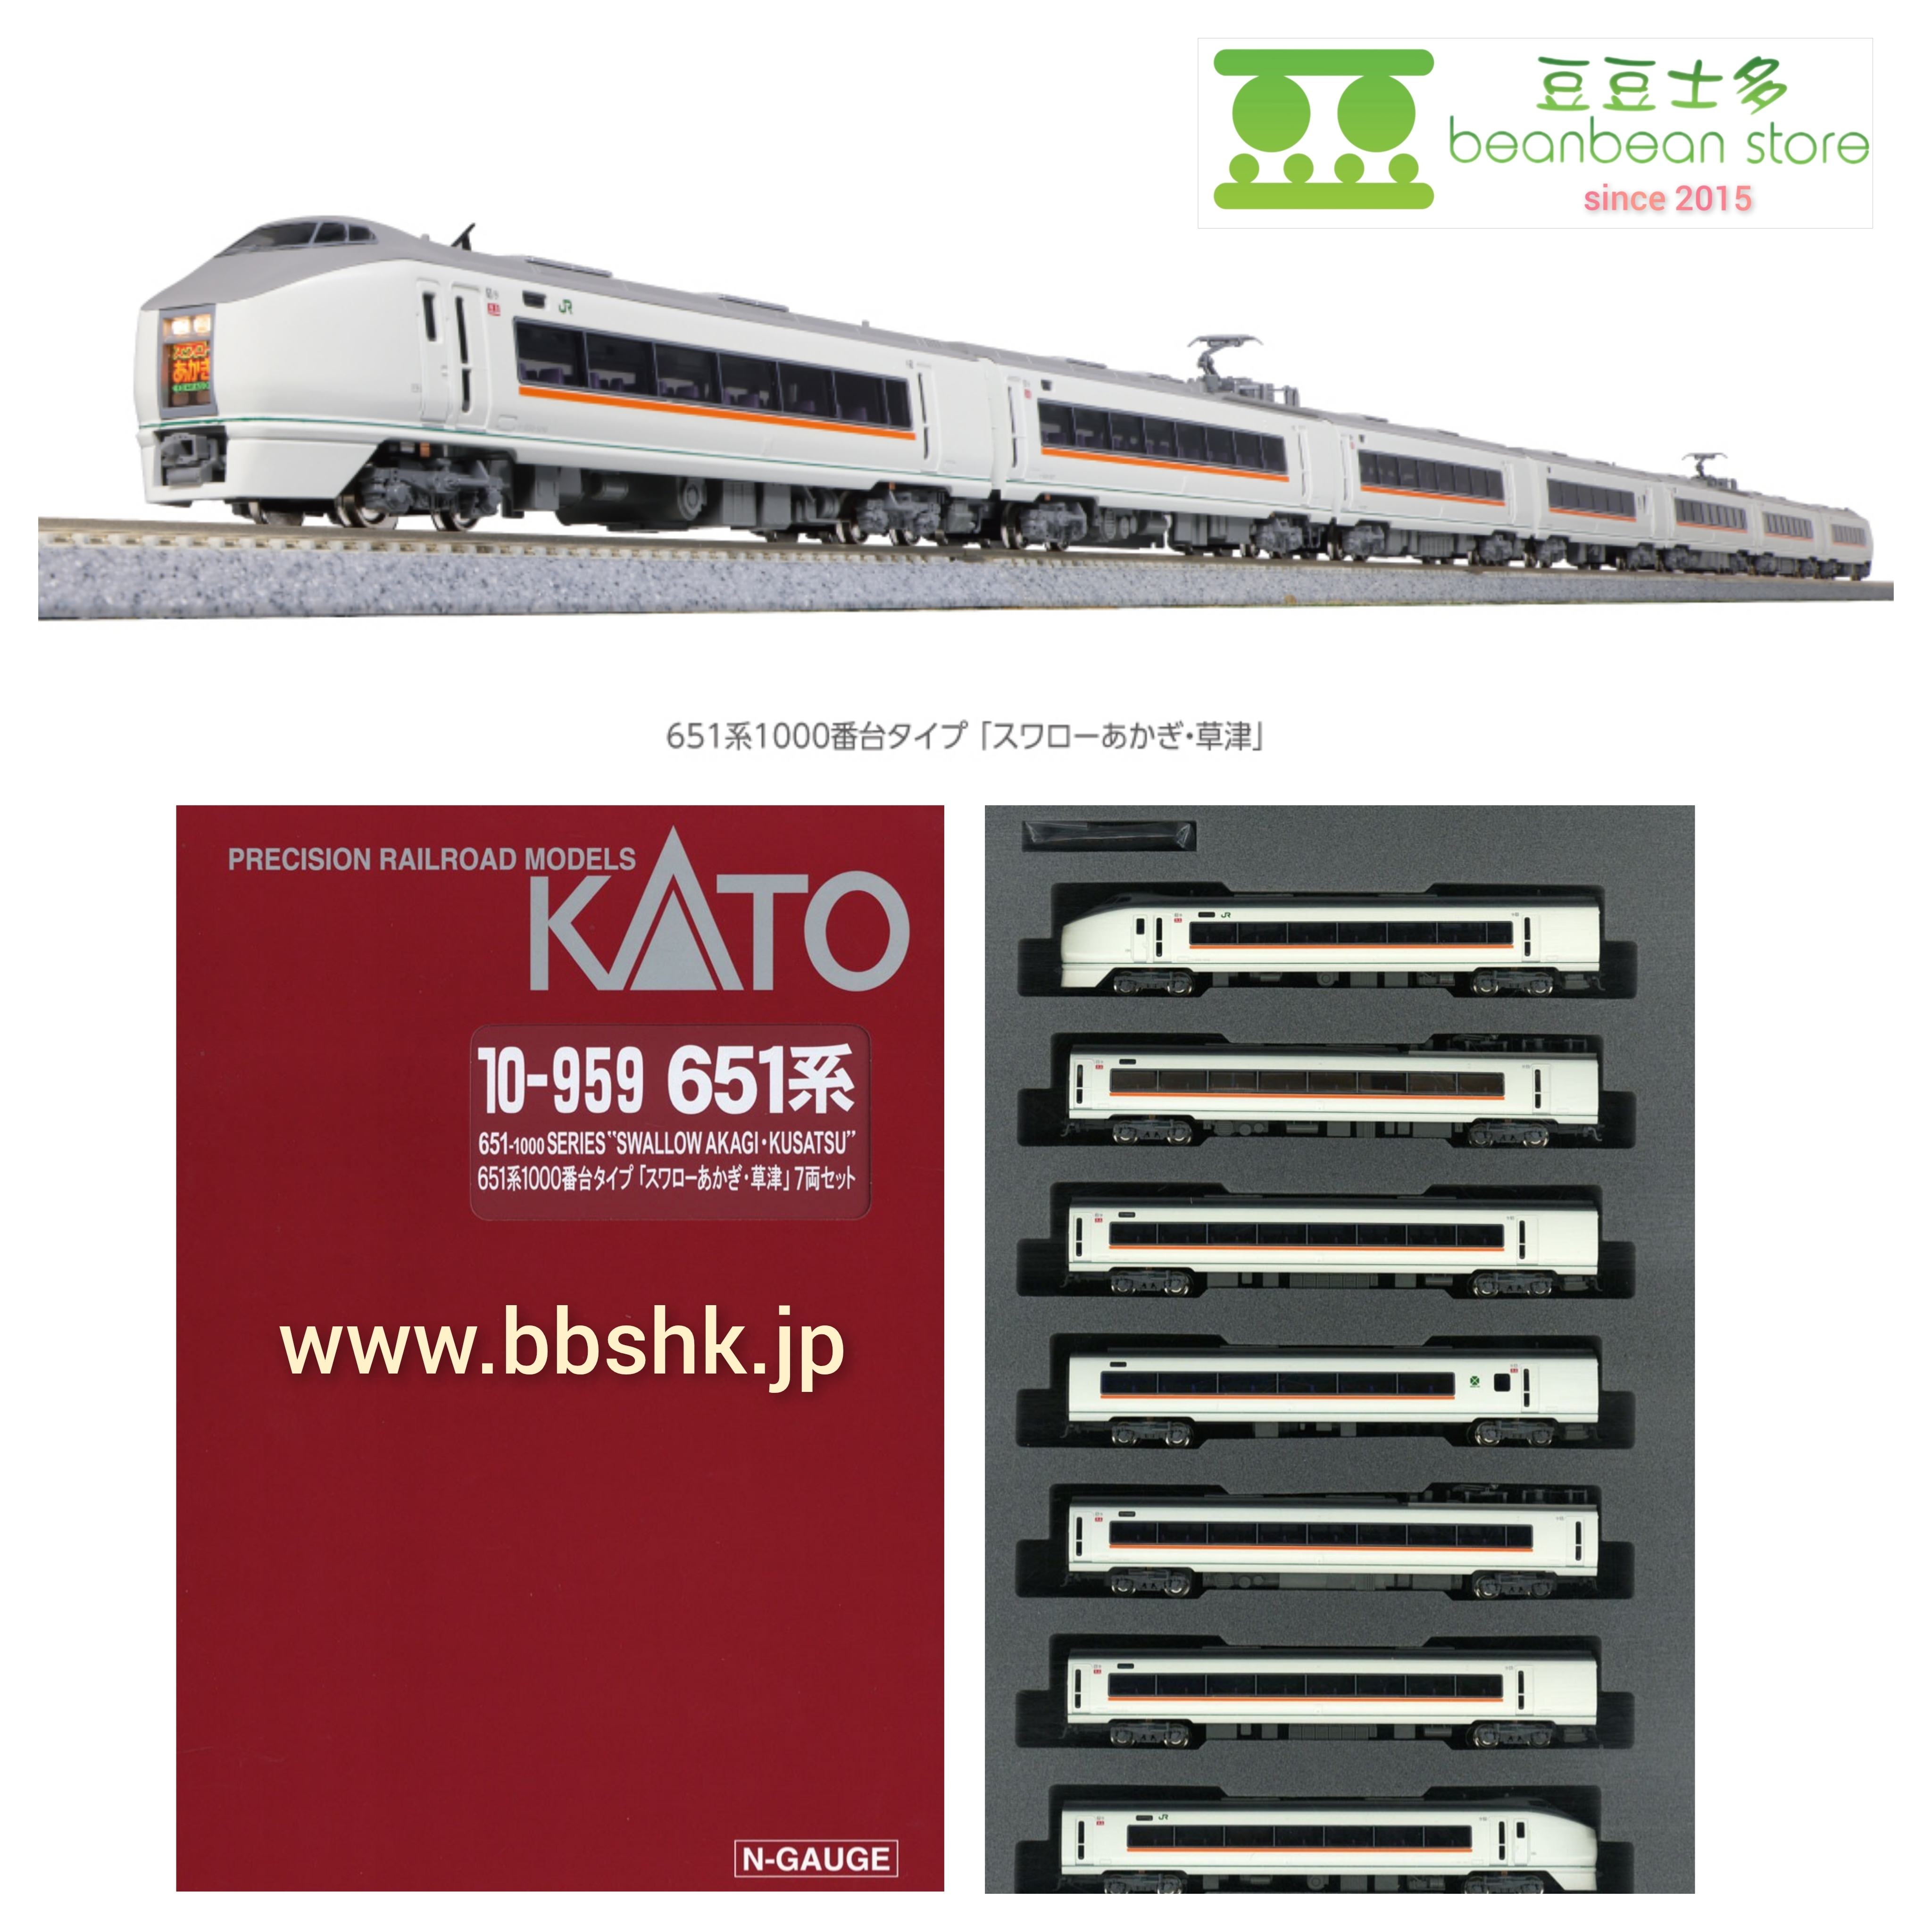 KATO 10-959 651系1000番台タイプ 「スワローあかぎ・草津」 7両